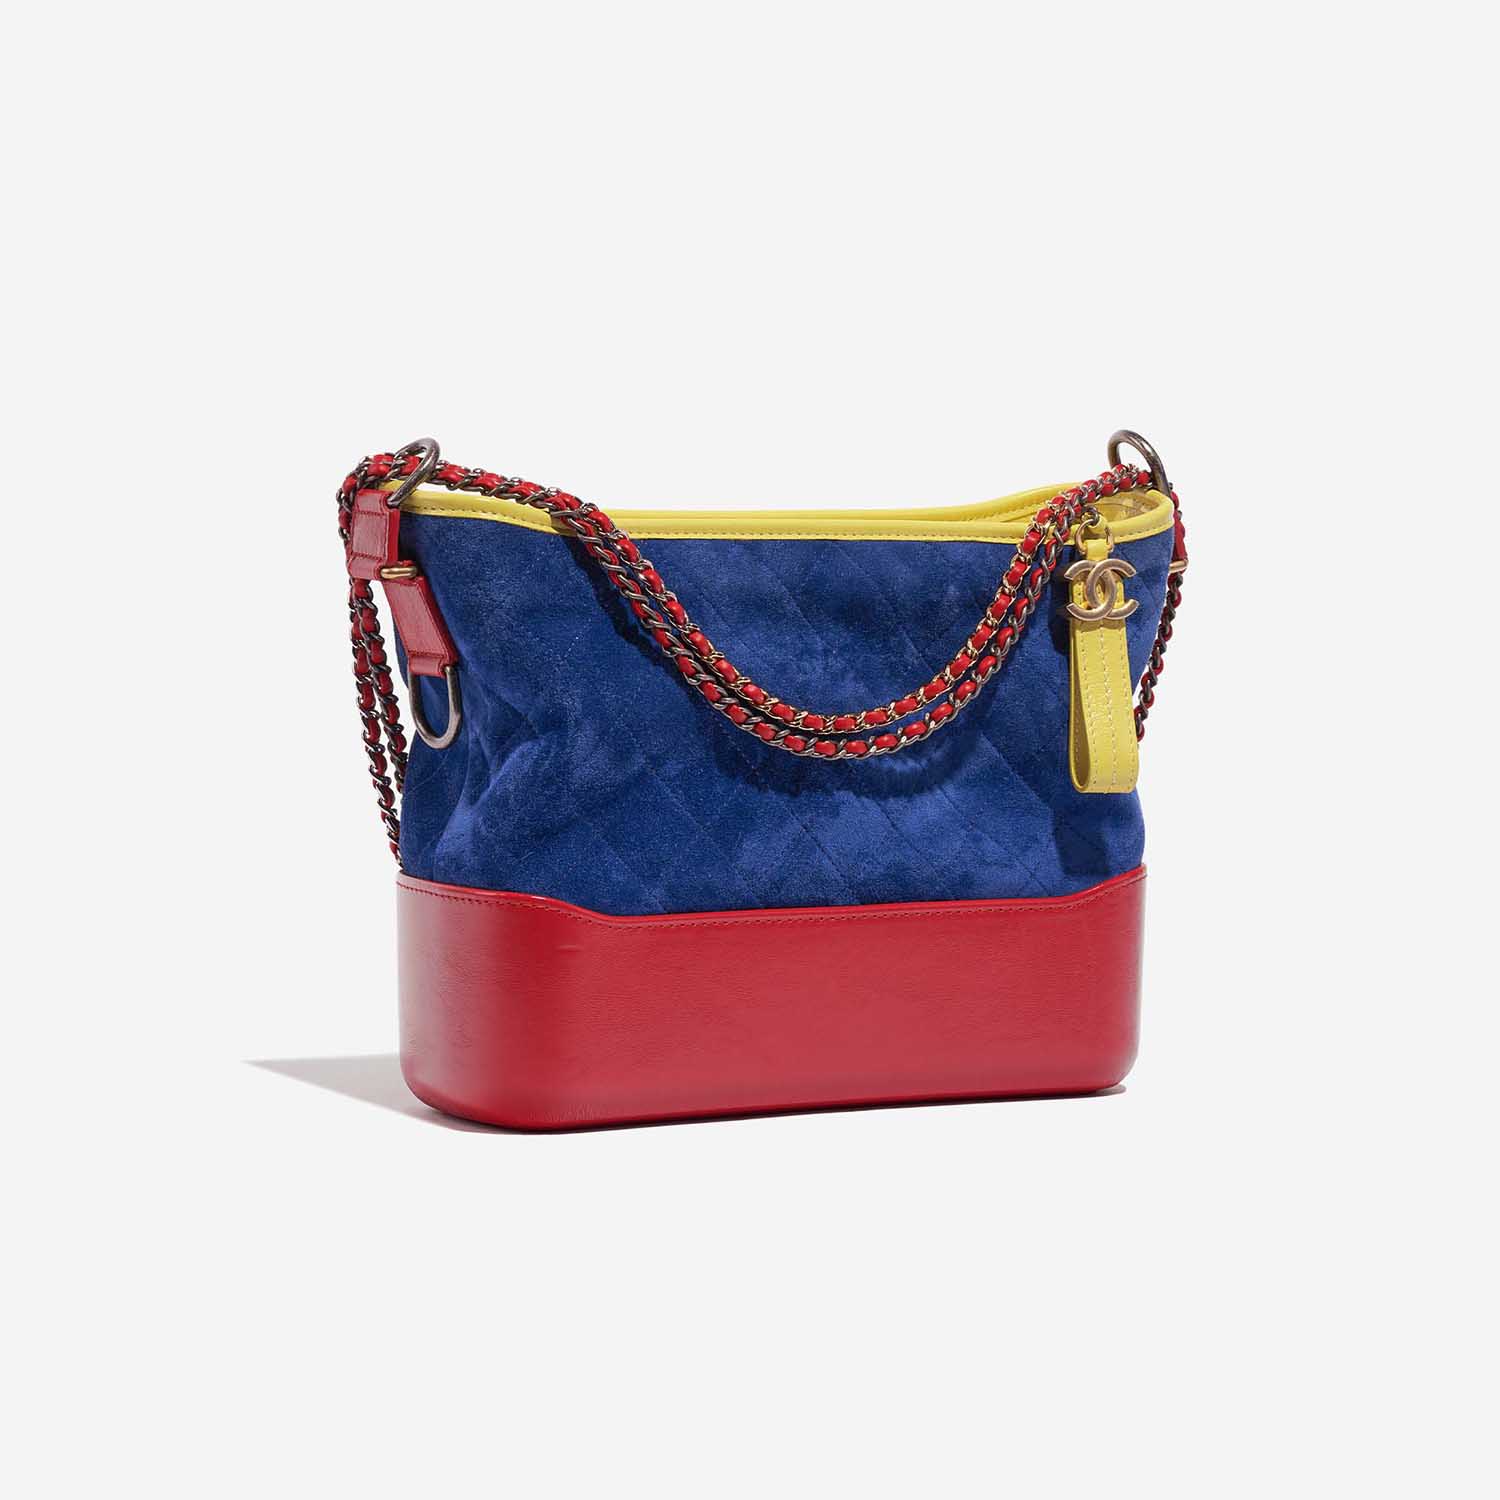 Pre-owned Chanel Tasche Gabrielle Medium Kalbsleder / Wildleder Blau / Rot / Gelb Blau, Multicolour Side Front | Verkaufen Sie Ihre Designer-Tasche auf Saclab.com